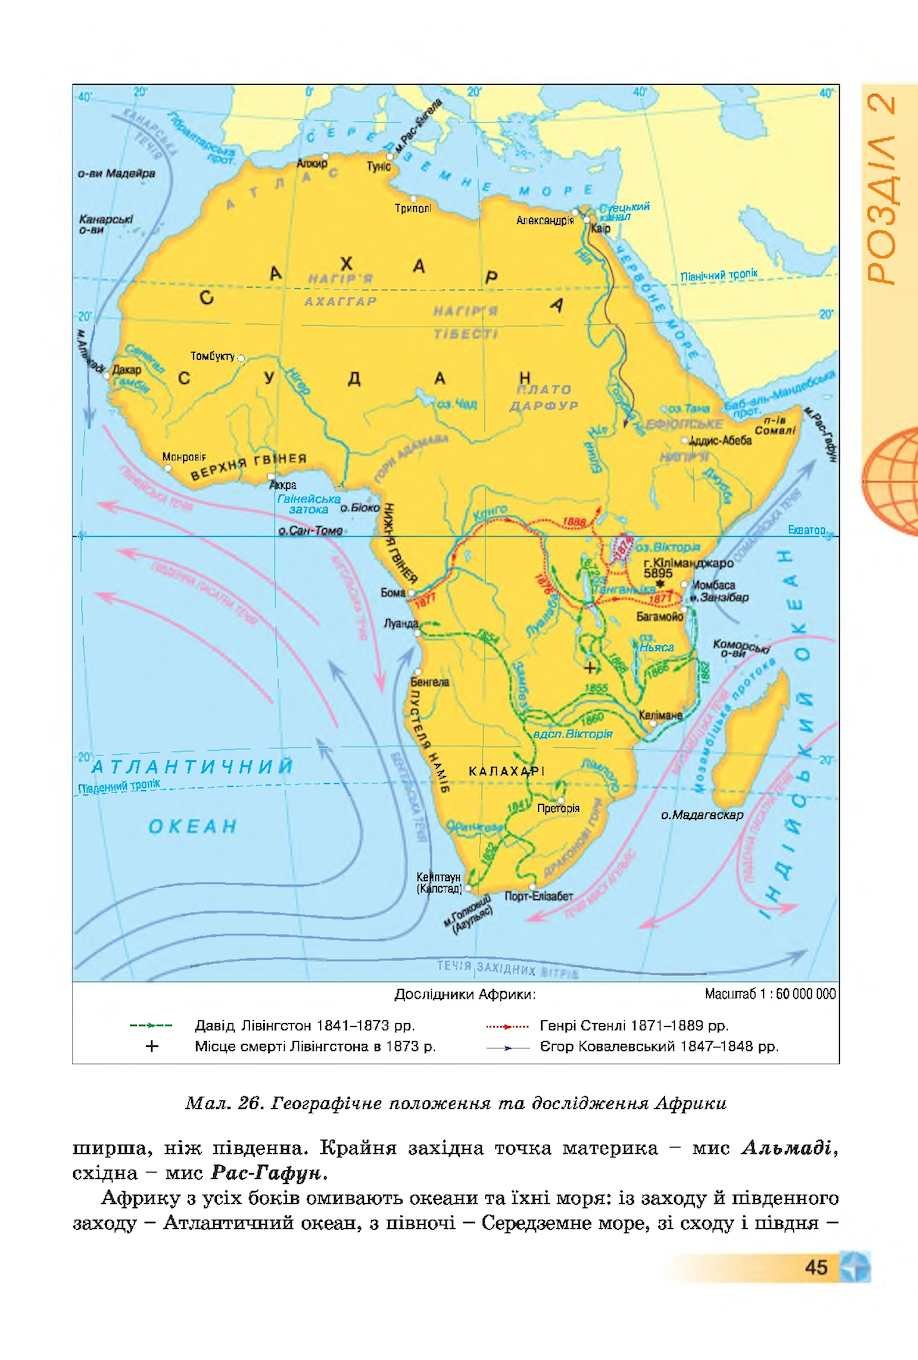 2 океанических течения у африки